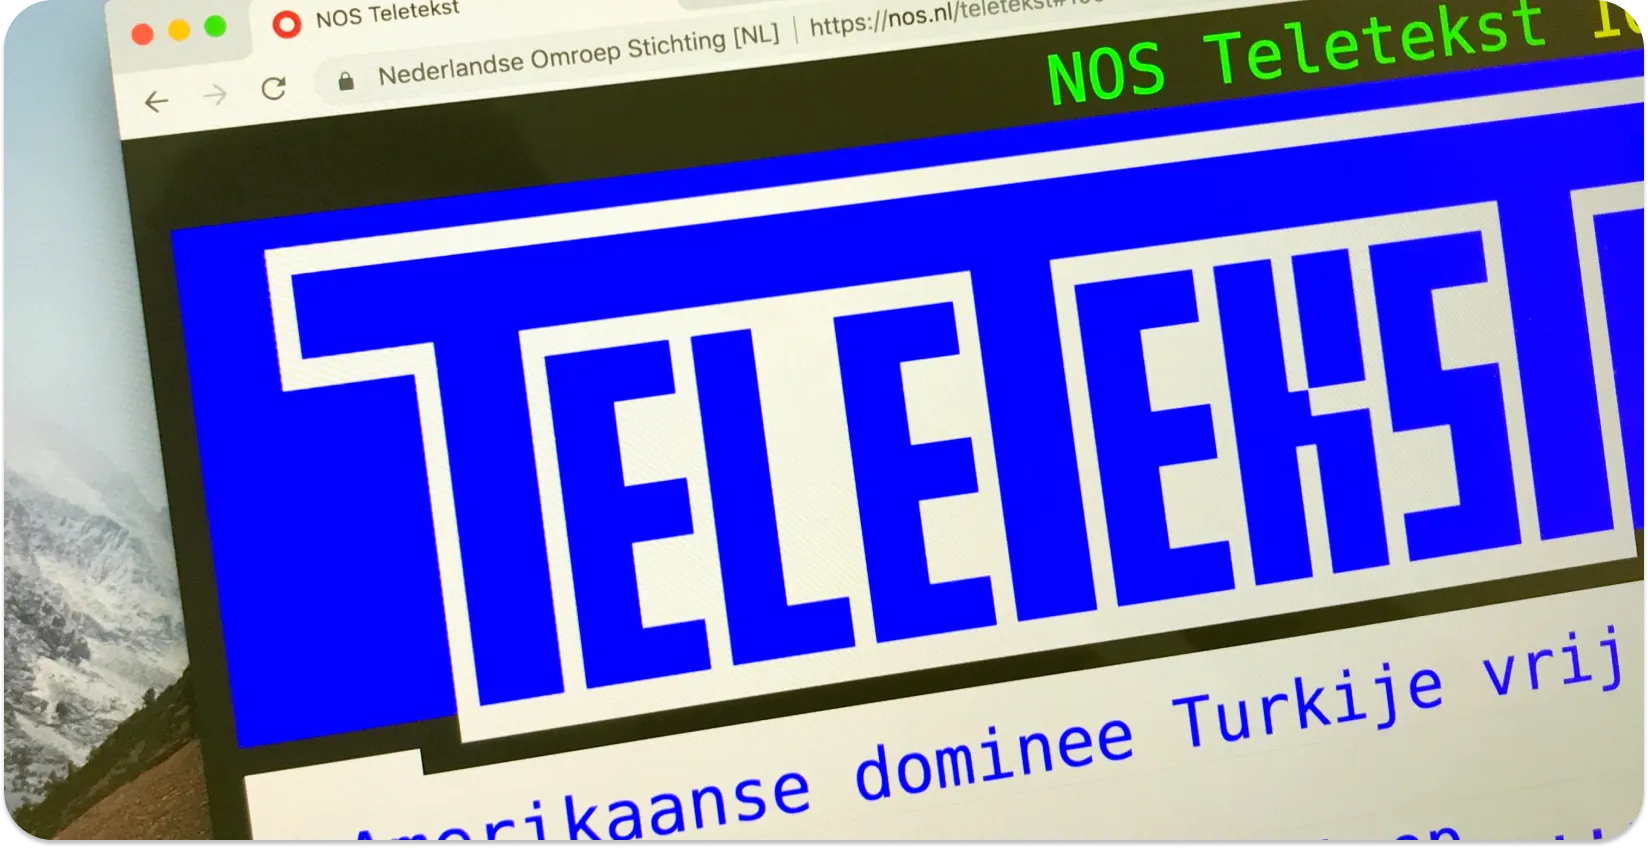 Obrazovka počítača zobrazujúca teletextové titulky s titulkami správ, ktoré sú príkladom formátu teletextových titulkov.